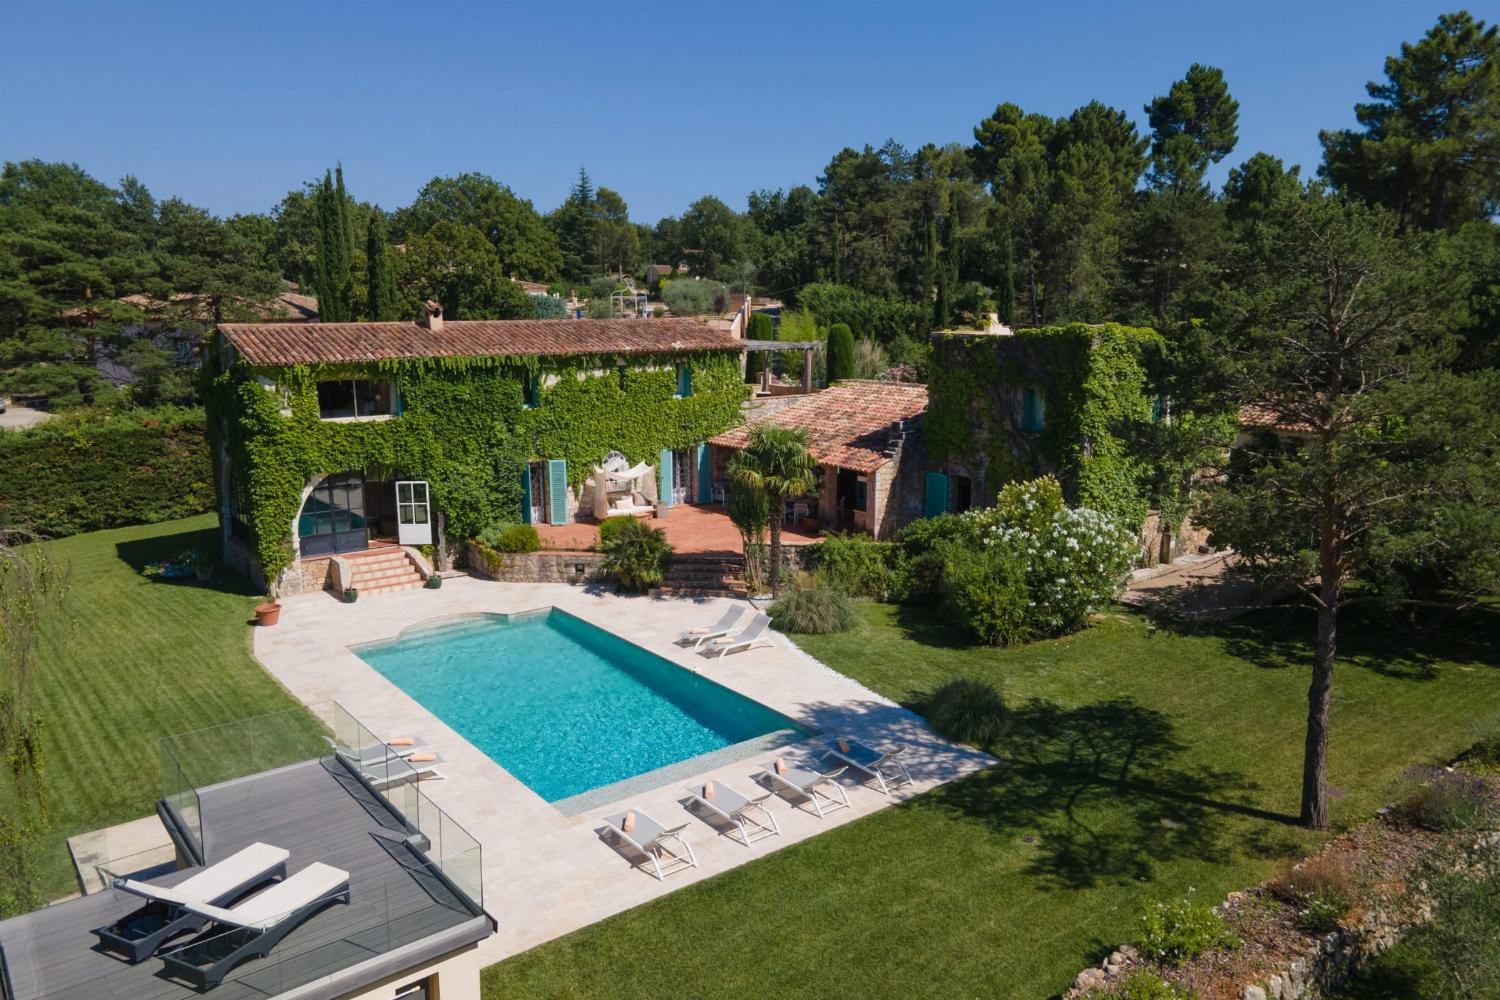 Maison de vacances en Provence avec piscine privée chauffée